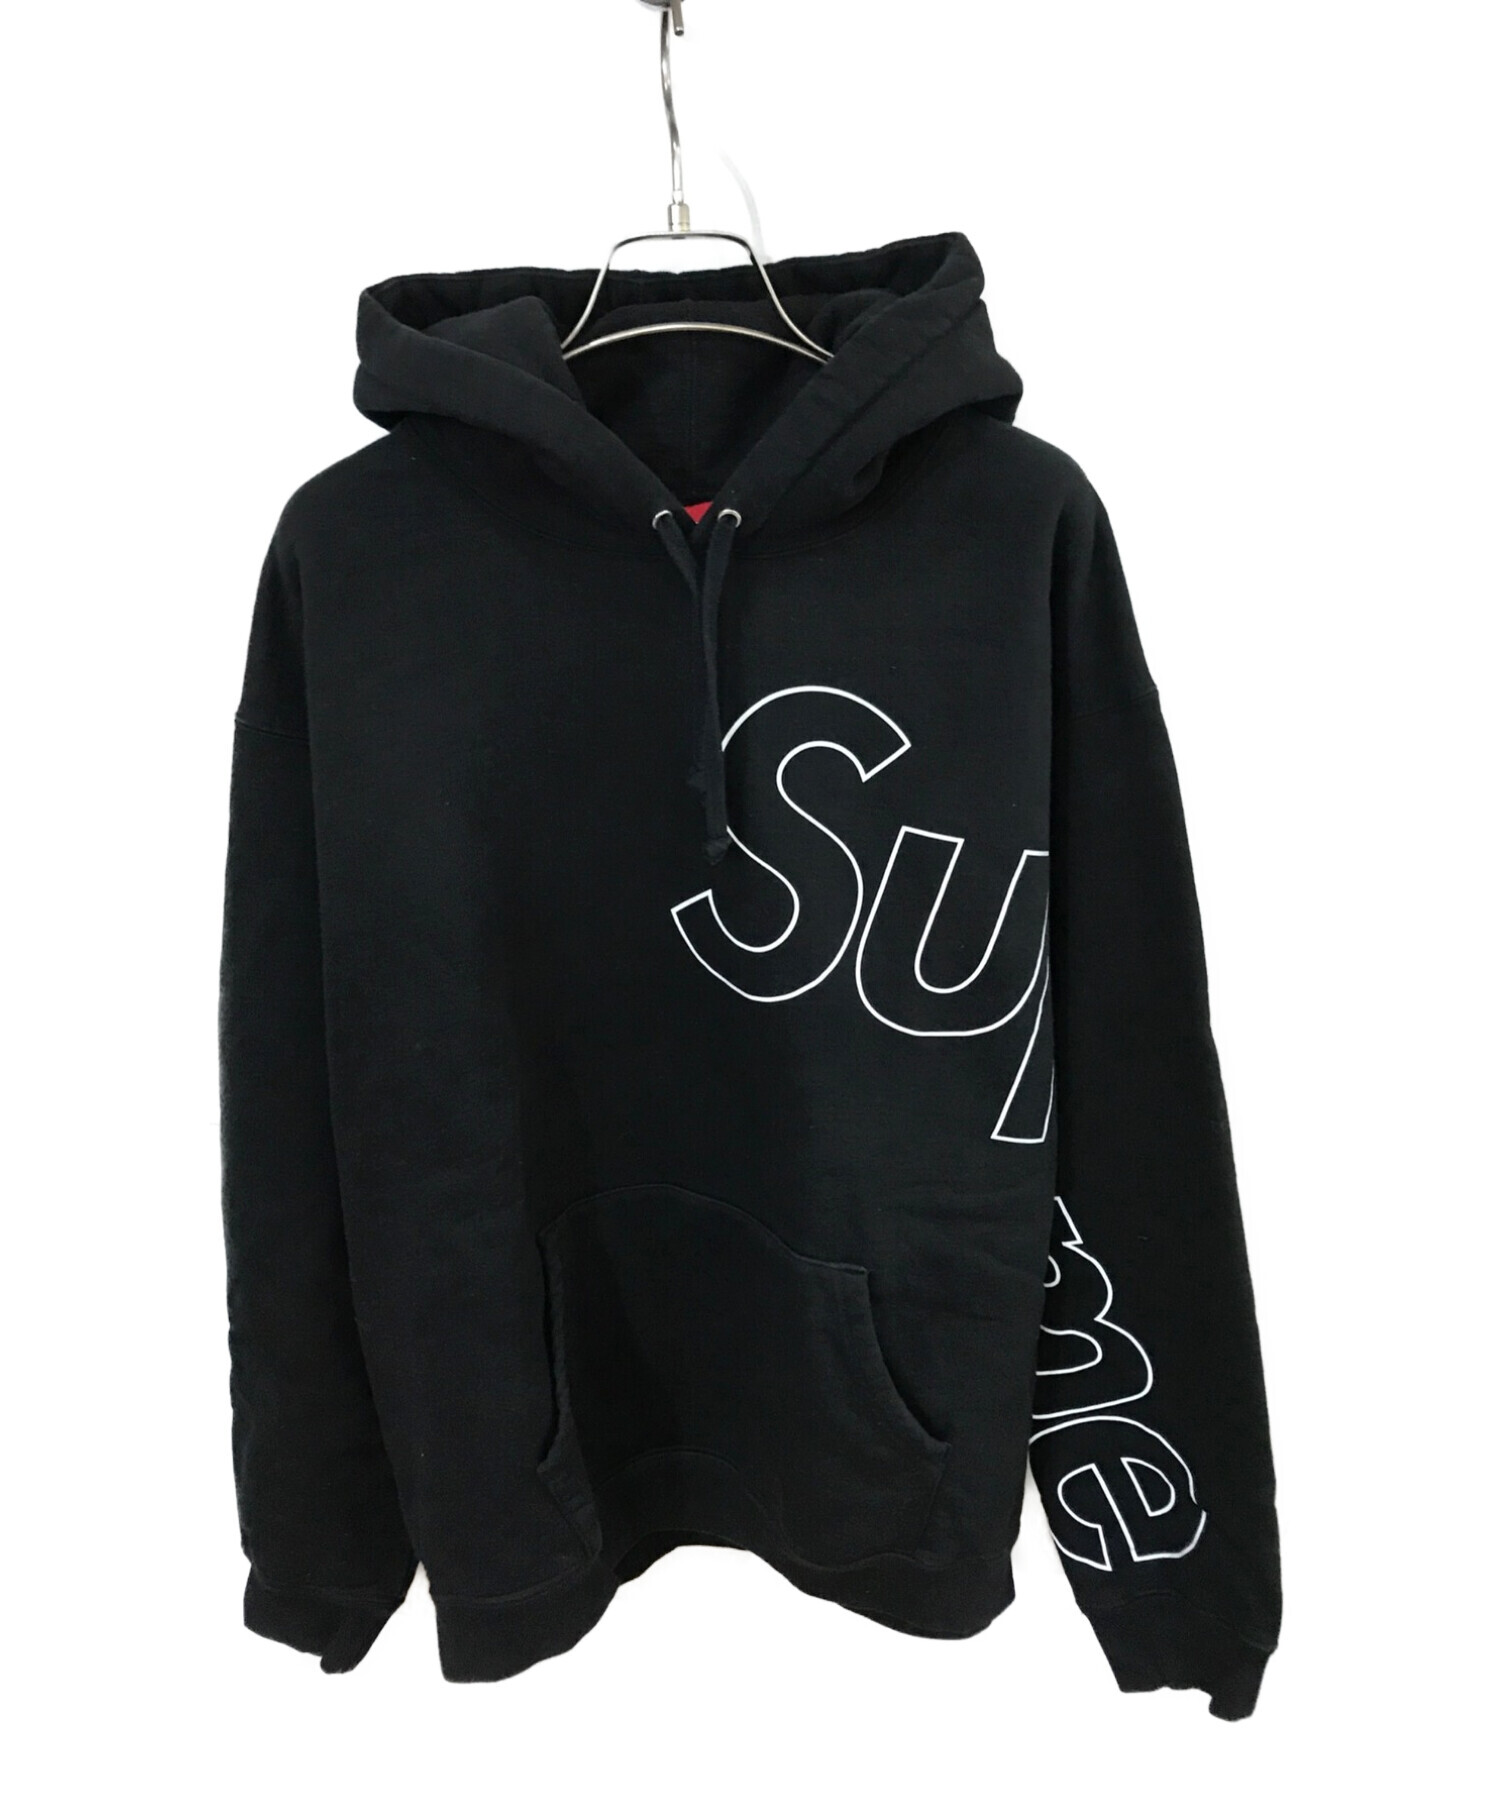 Supreme (シュプリーム) Reflective Hooded Sweatshirt ブラック サイズ:M